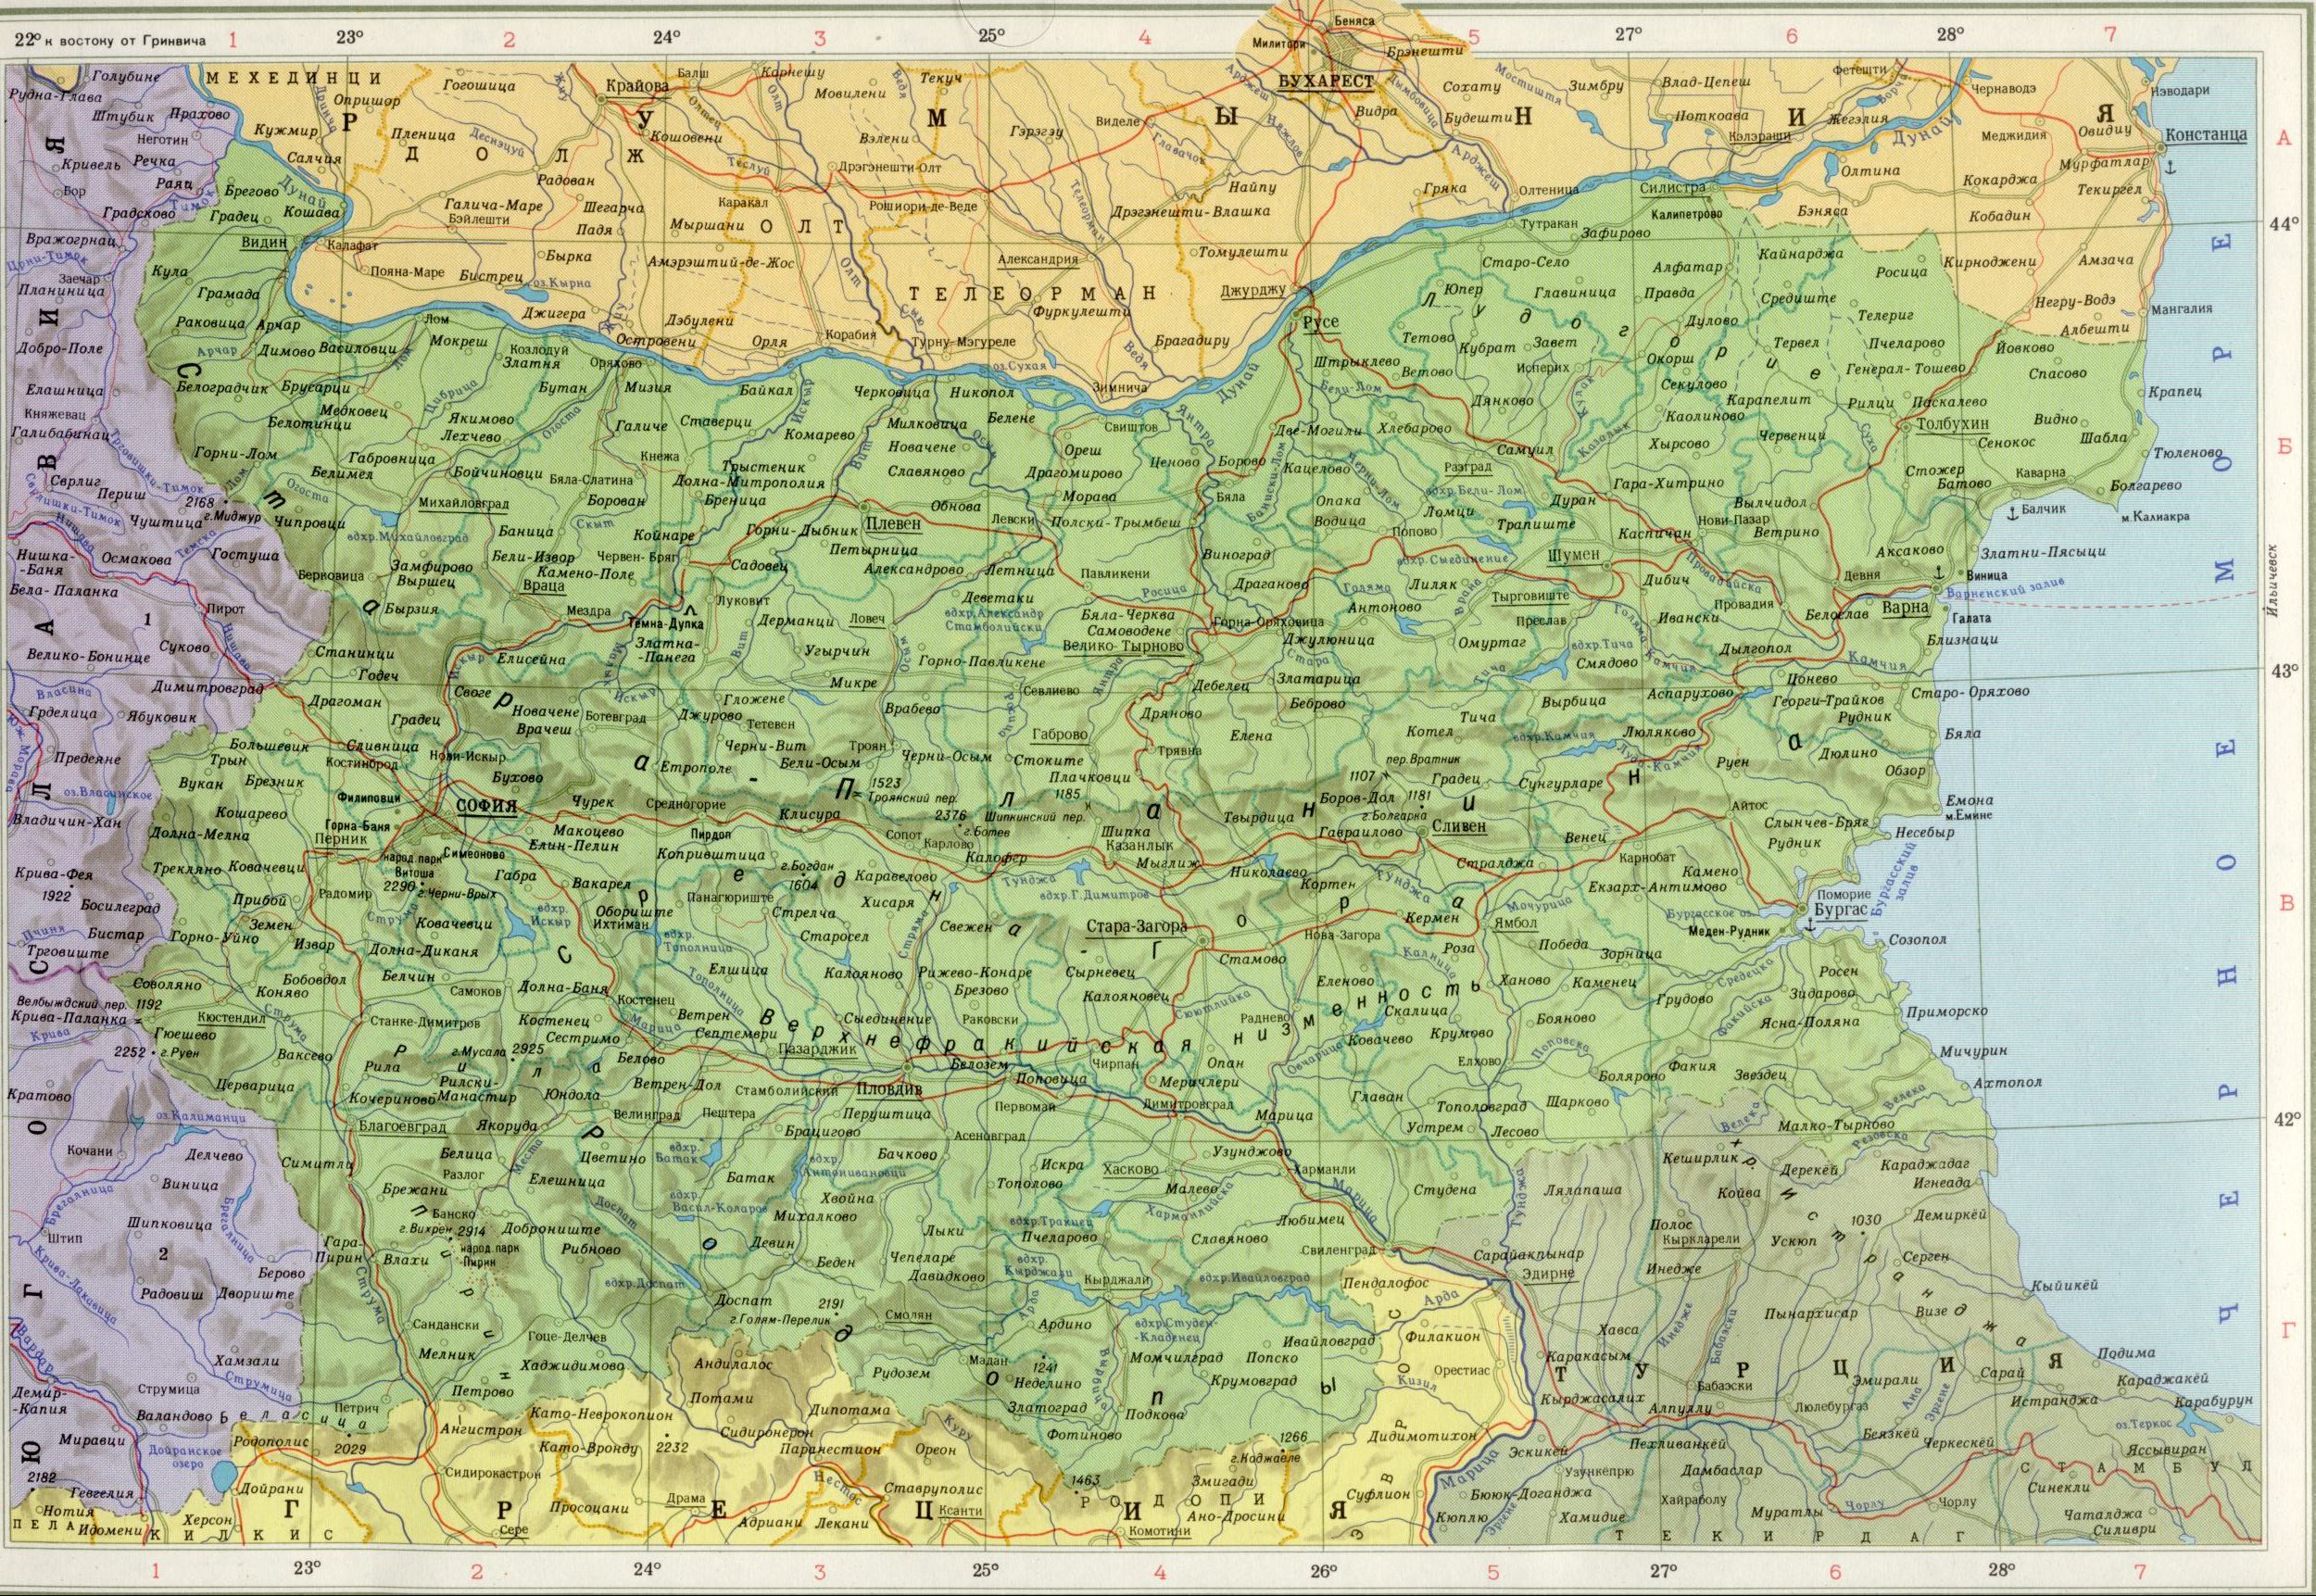 Карта Болгарии 1см=20км. скачать бесплатно политические карты Европы